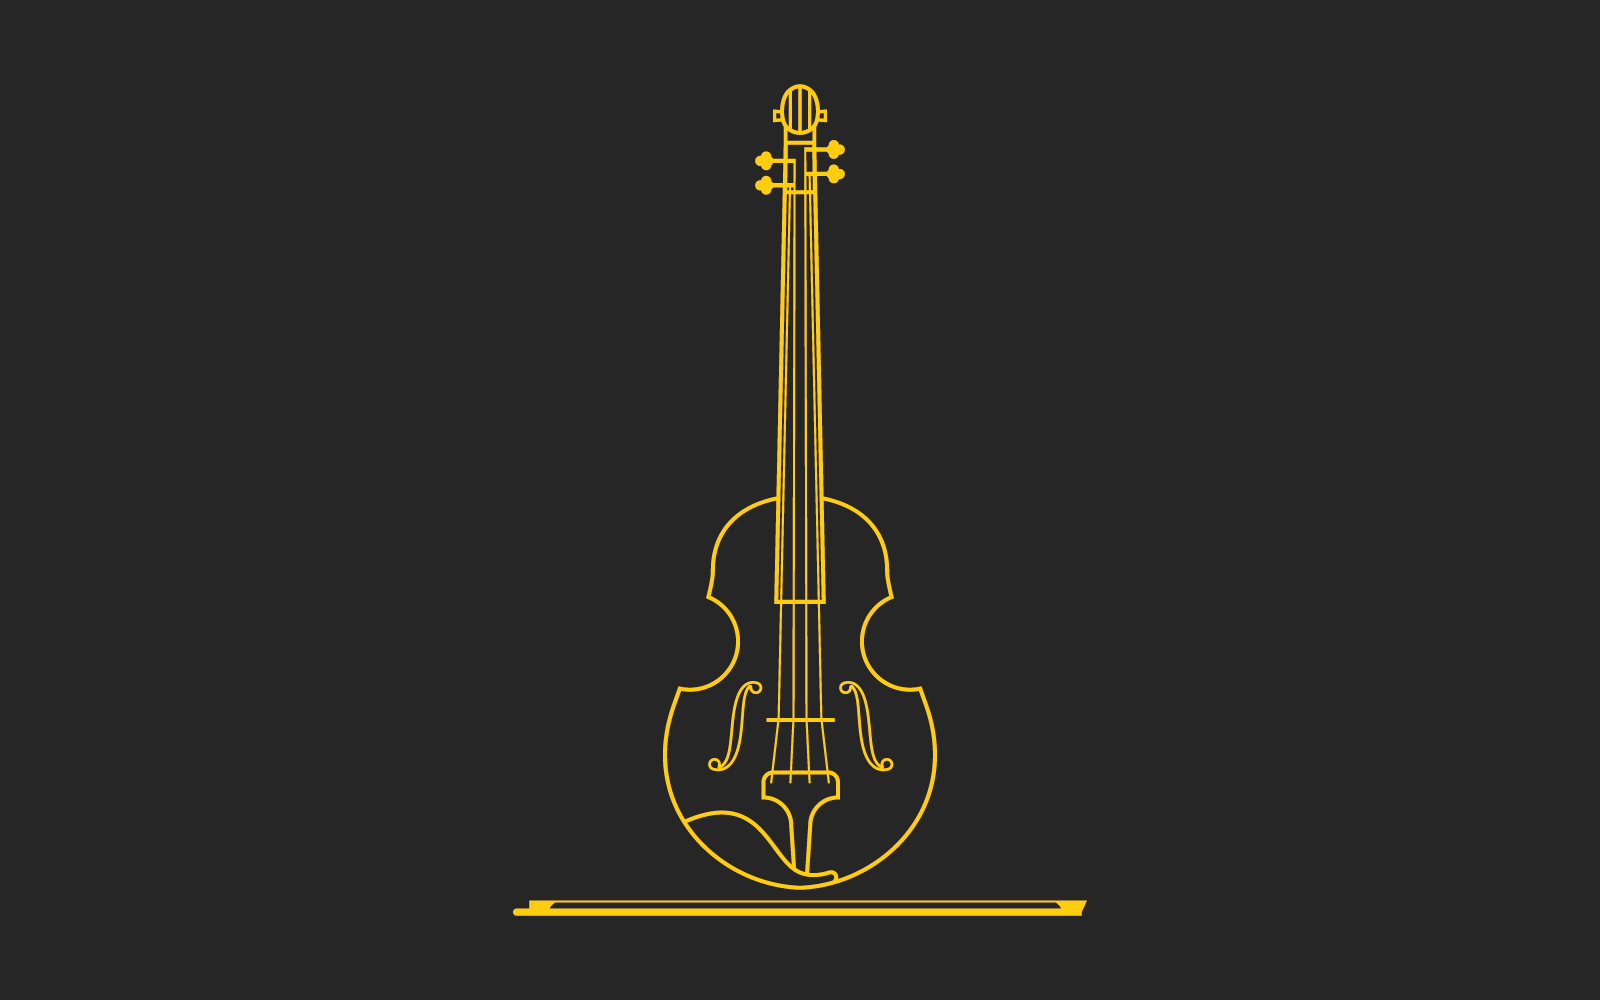 Violin on black background illustration vector flat design eps 10